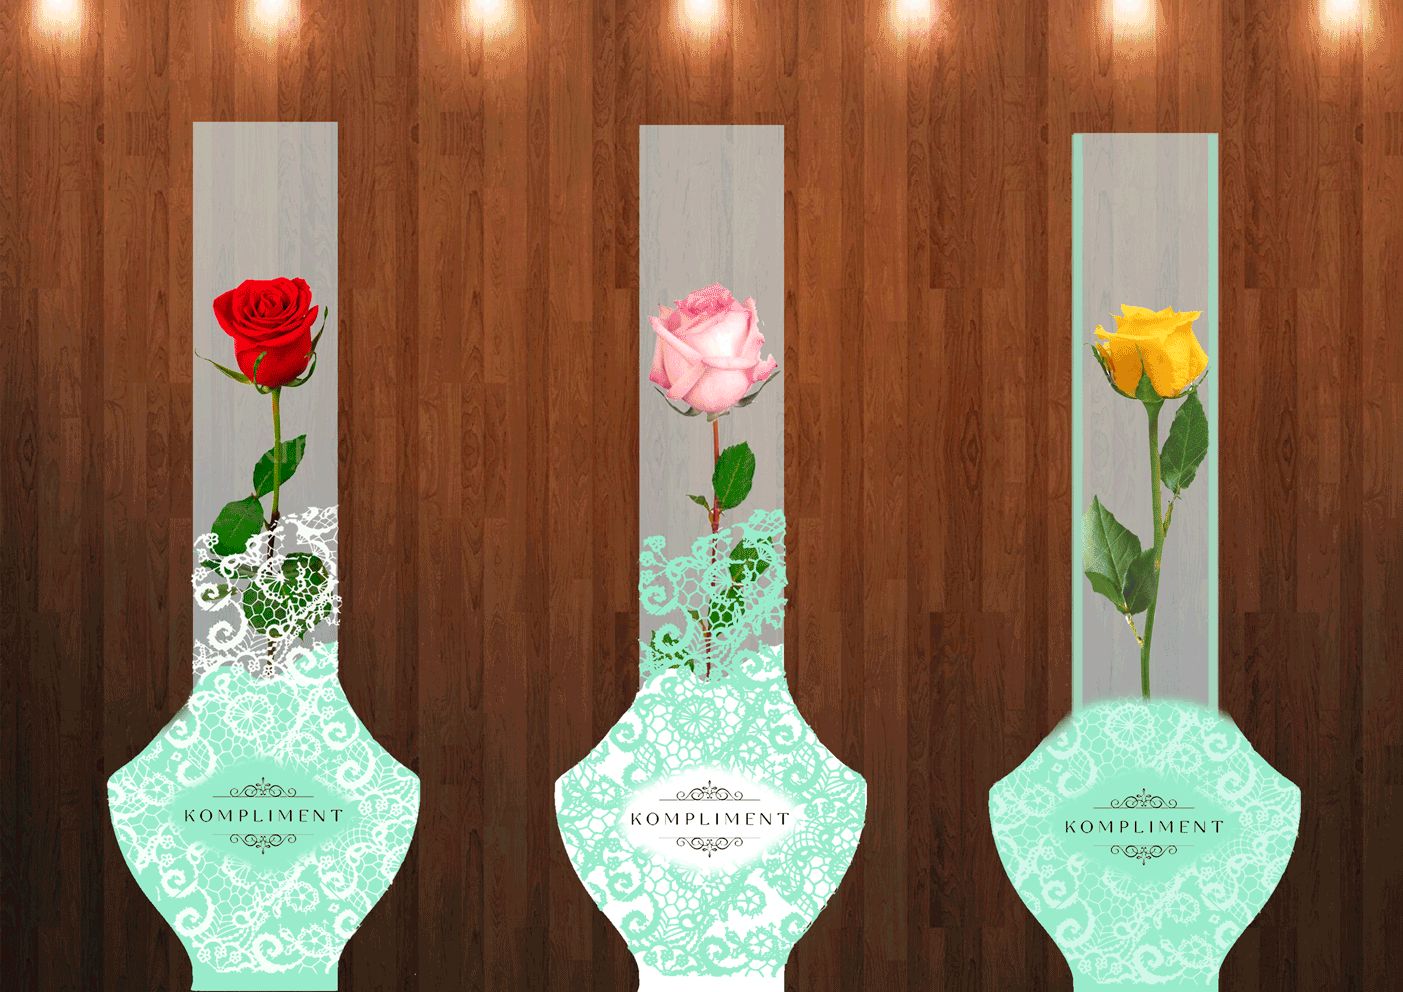 Упаковка для продажи розы  - дизайнер Polly668